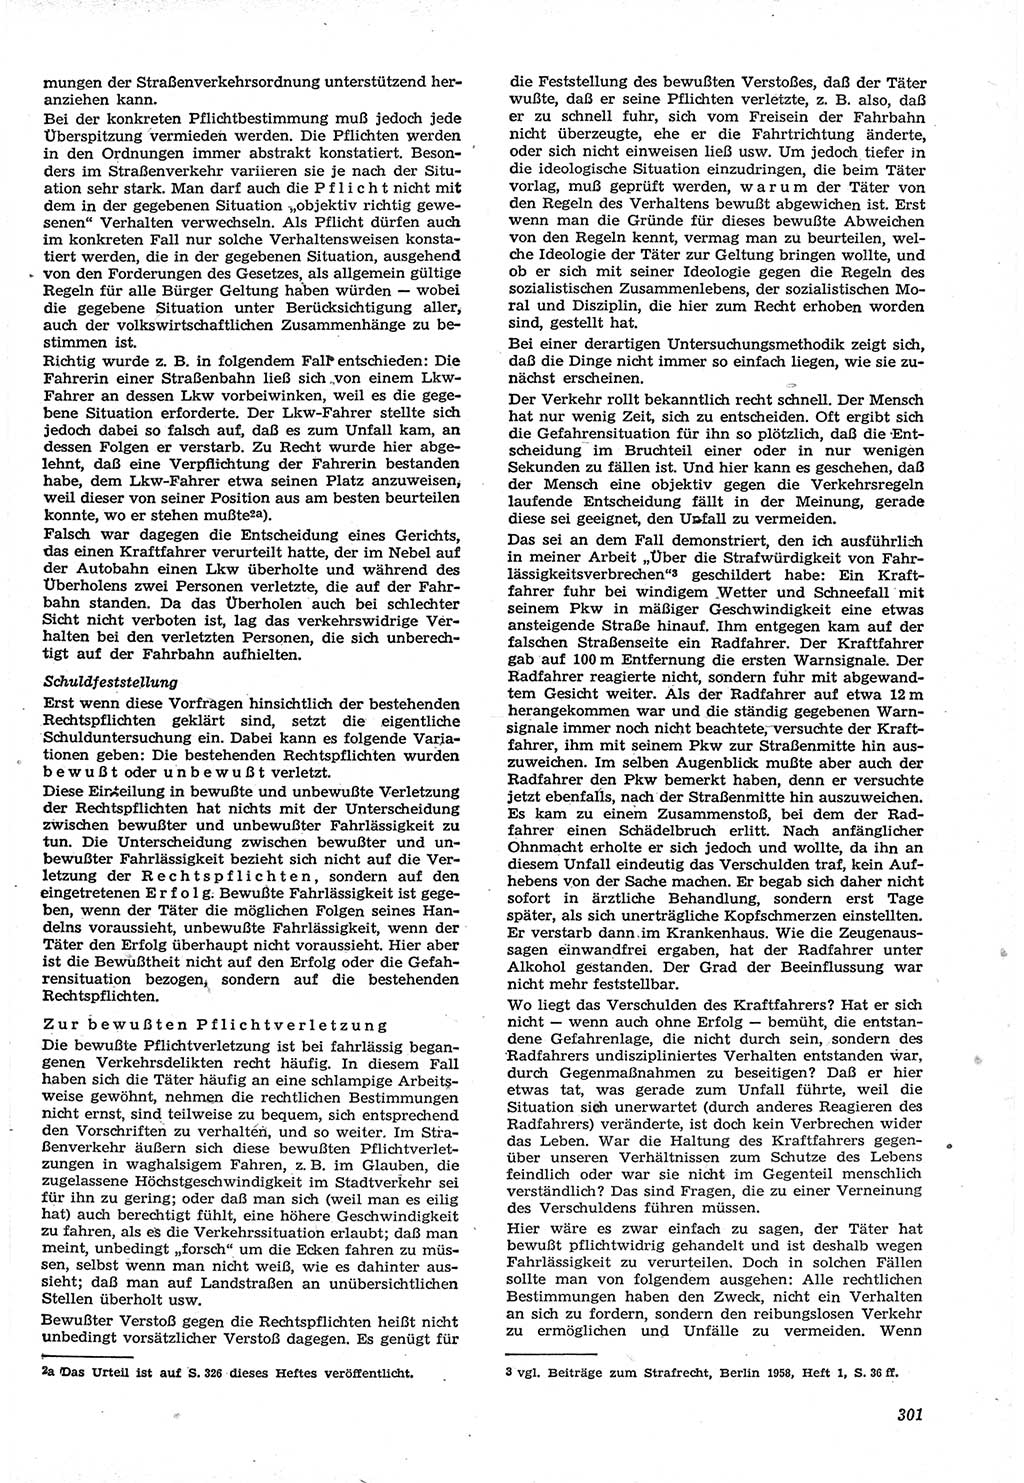 Neue Justiz (NJ), Zeitschrift für Recht und Rechtswissenschaft [Deutsche Demokratische Republik (DDR)], 15. Jahrgang 1961, Seite 301 (NJ DDR 1961, S. 301)